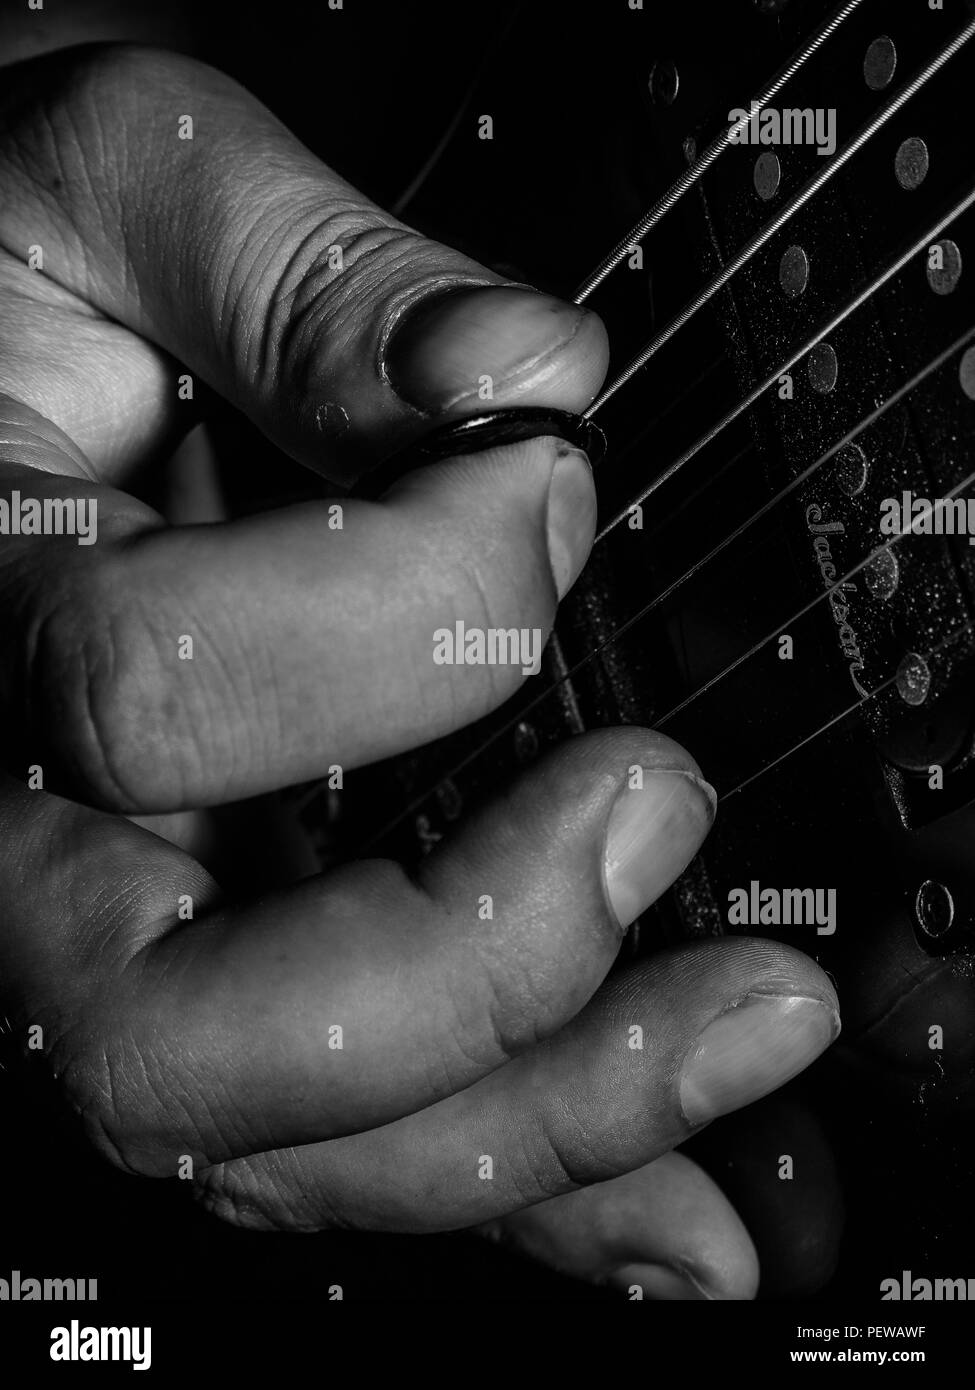 Playing guitar close up Stock Photo